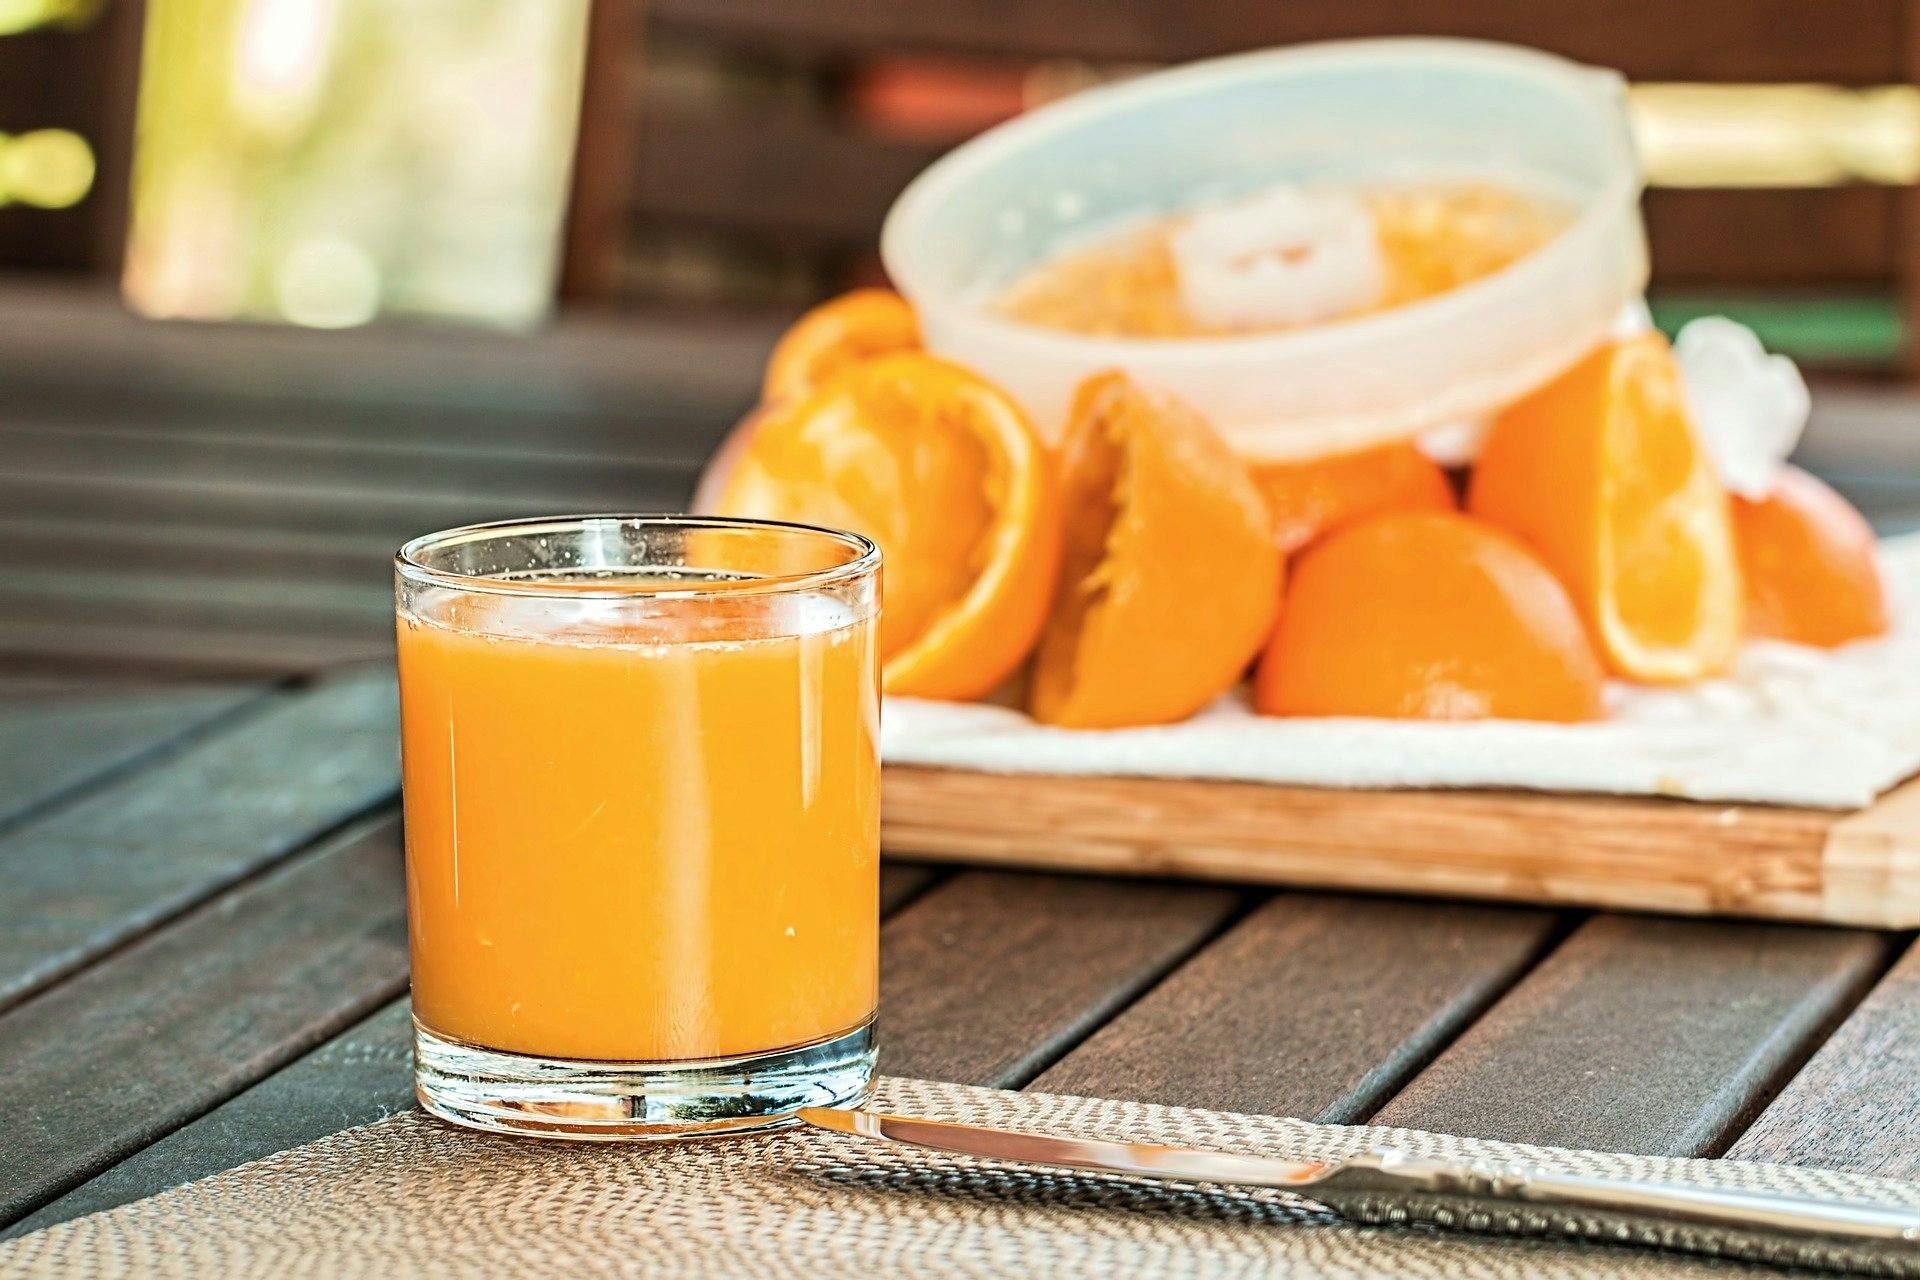 Le jus d orange pressé : conseils pour préparer un jus d'orange